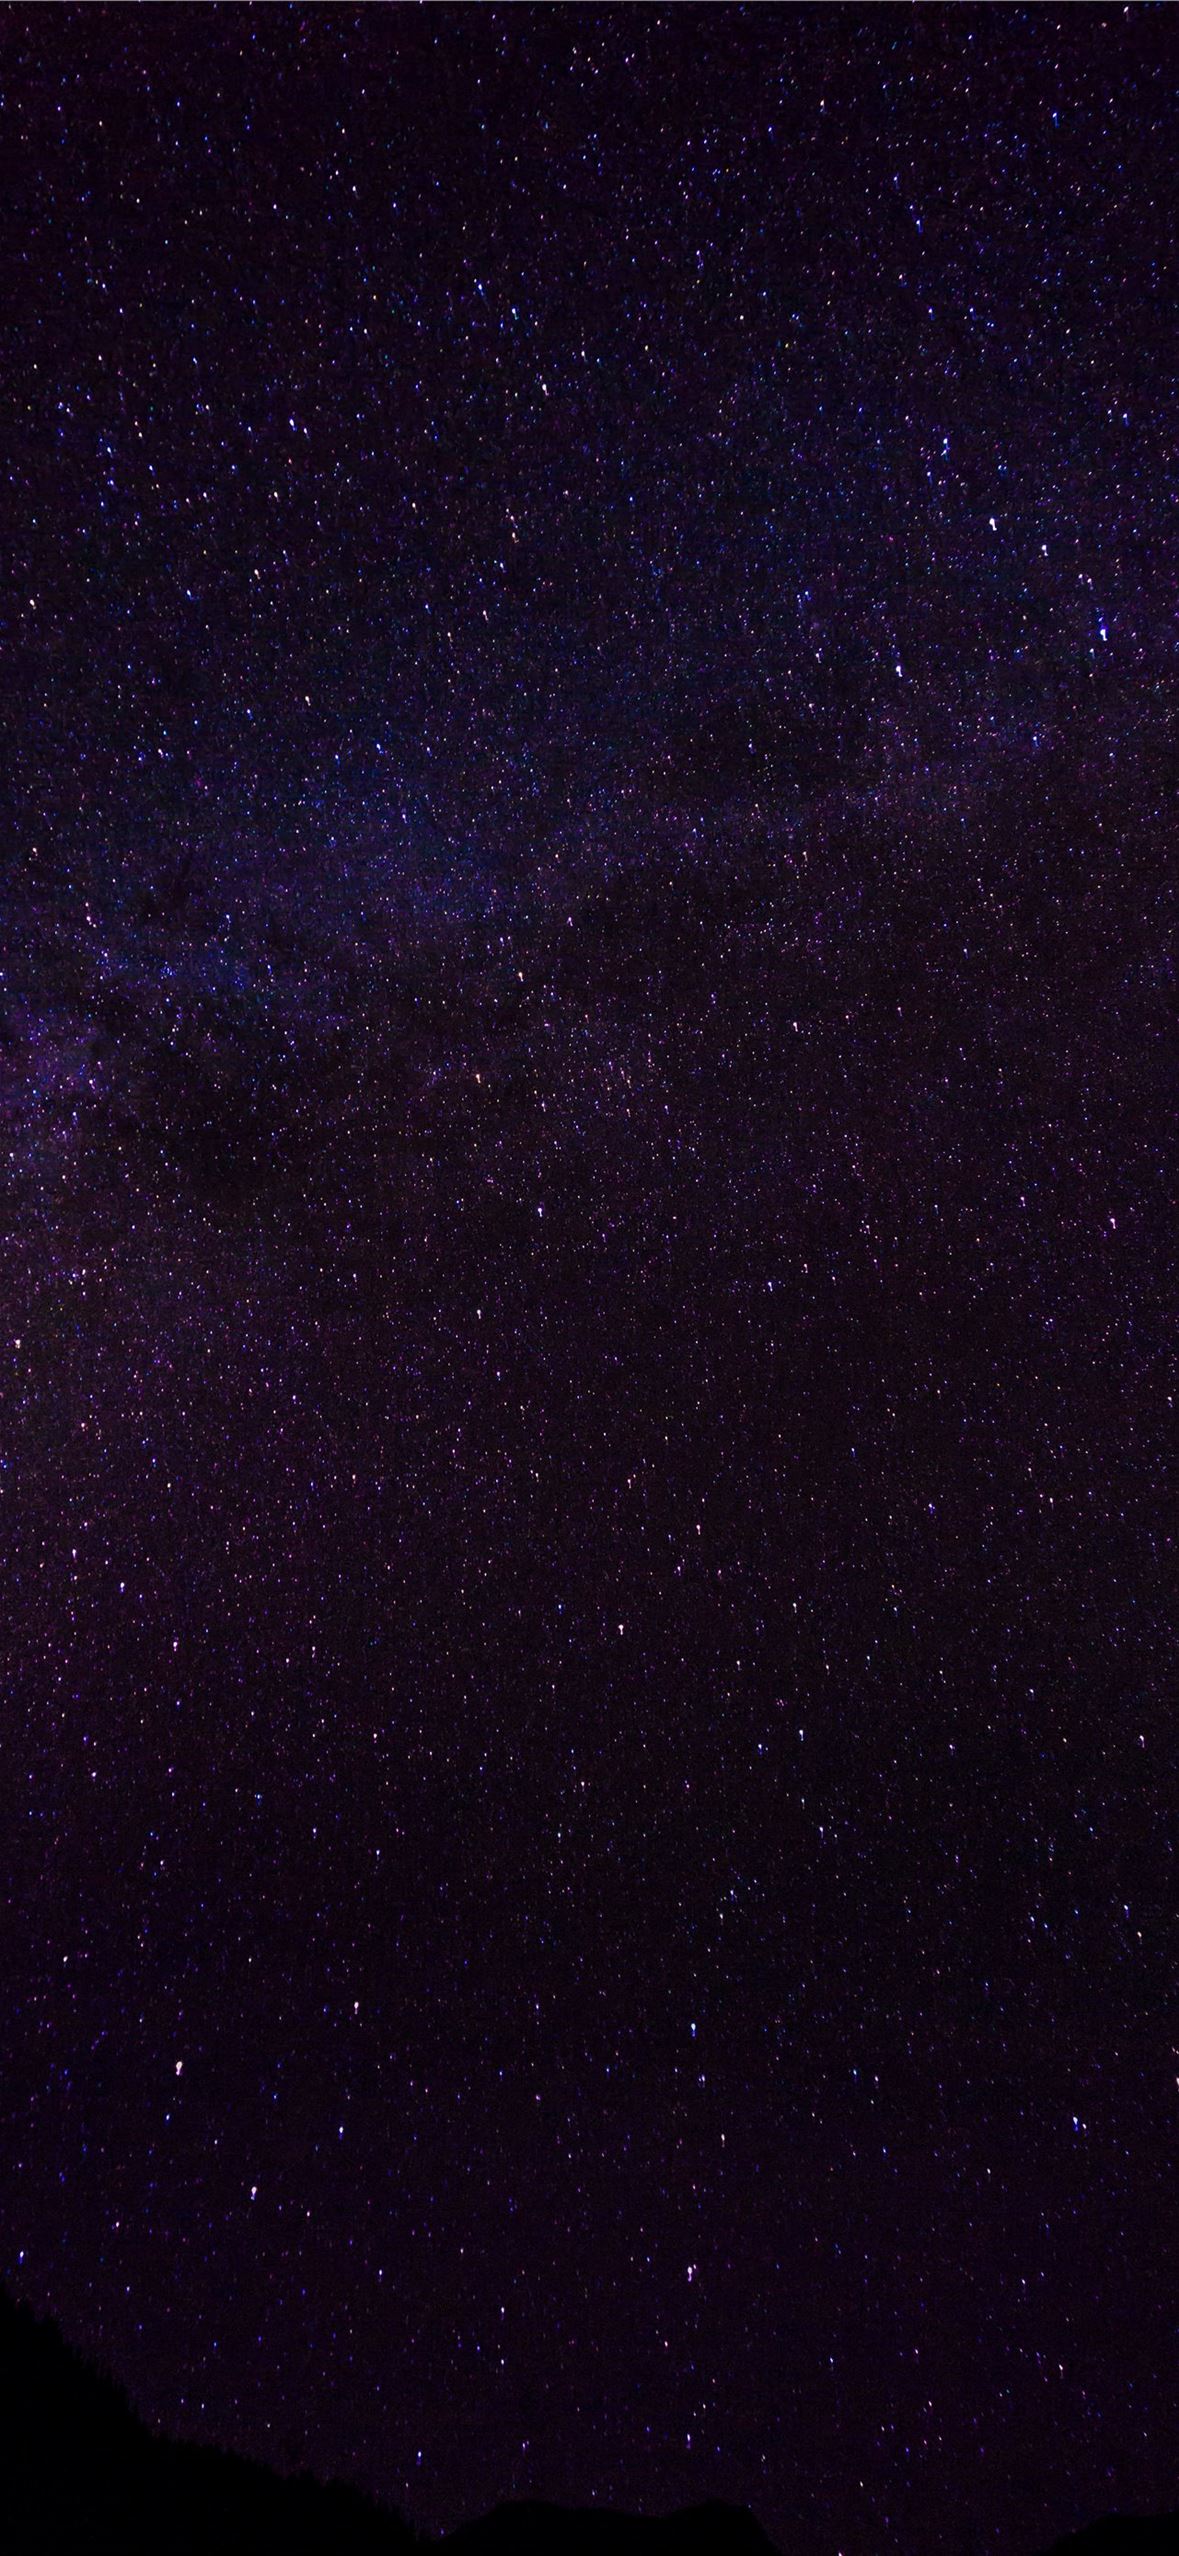 Màu tím là một trong những gam màu được yêu thích nhất trong bộ sưu tập hình nền thiên hà của chúng tôi. Nếu bạn đang tìm kiếm một hình nền mới cho iPhone của mình, hãy tải về những hình nền màu tím độc đáo và tuyệt vời này. Chúng tôi cam đoan bạn sẽ không bao giờ hối hận khi tải về những hình nền tuyệt vời này đâu!